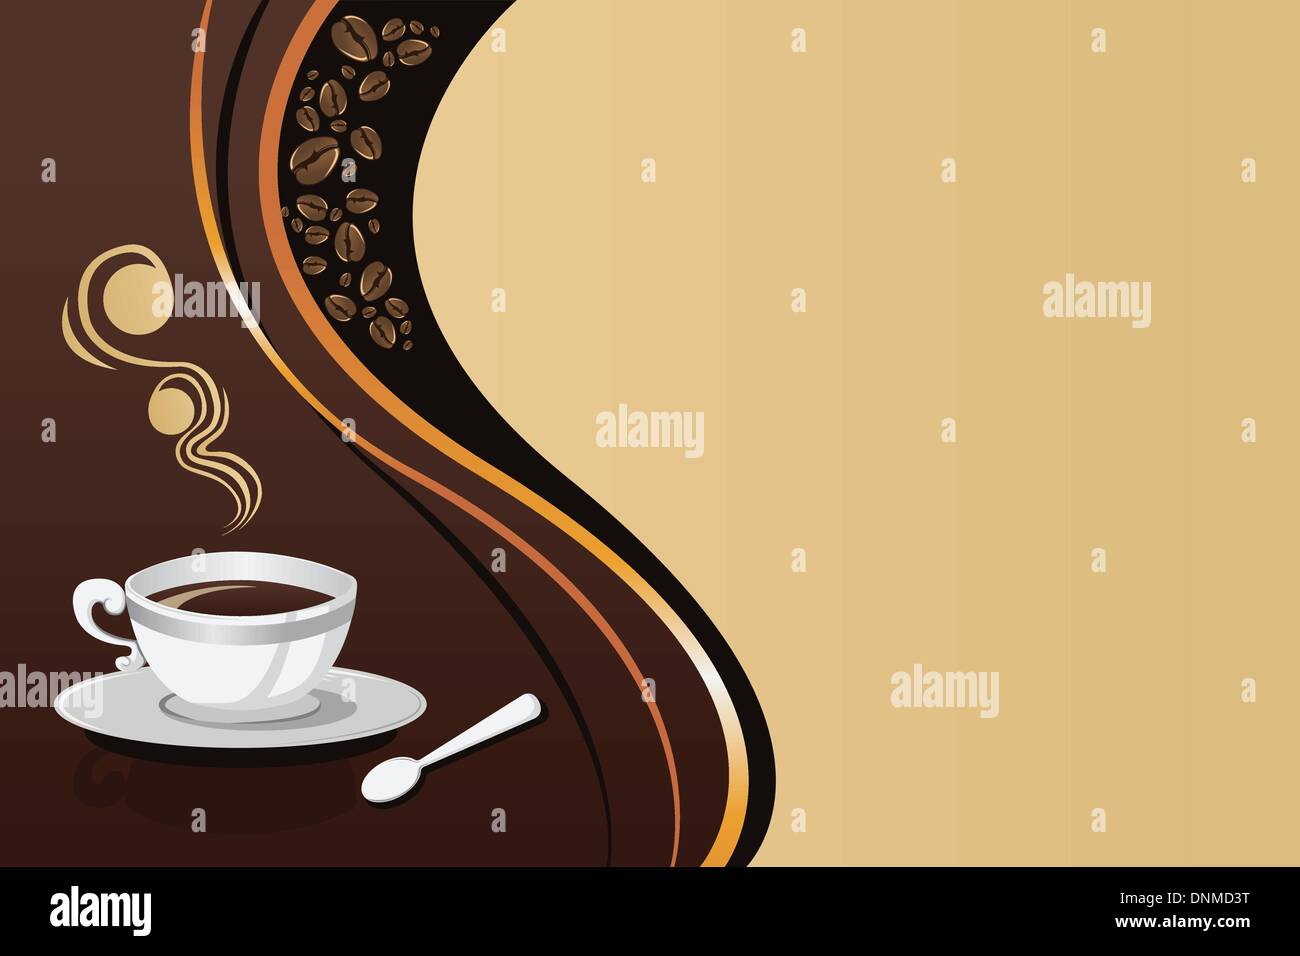 Eine Vektor-Illustration von Kaffee Becher Hintergrund mit Exemplar Stock Vektor